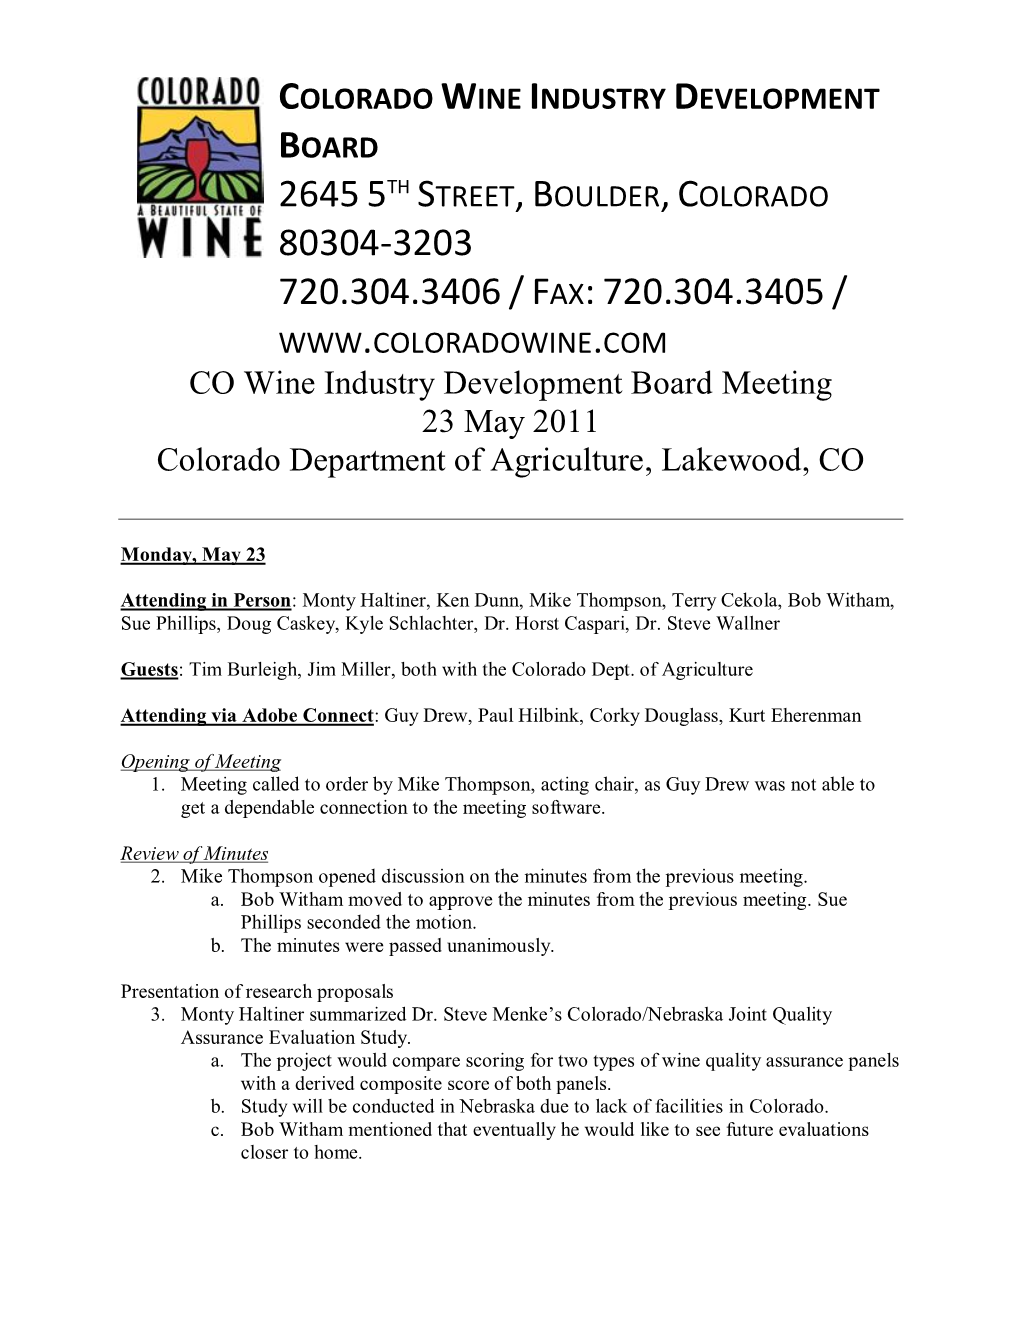 CO Wine Industry Development Board Agenda